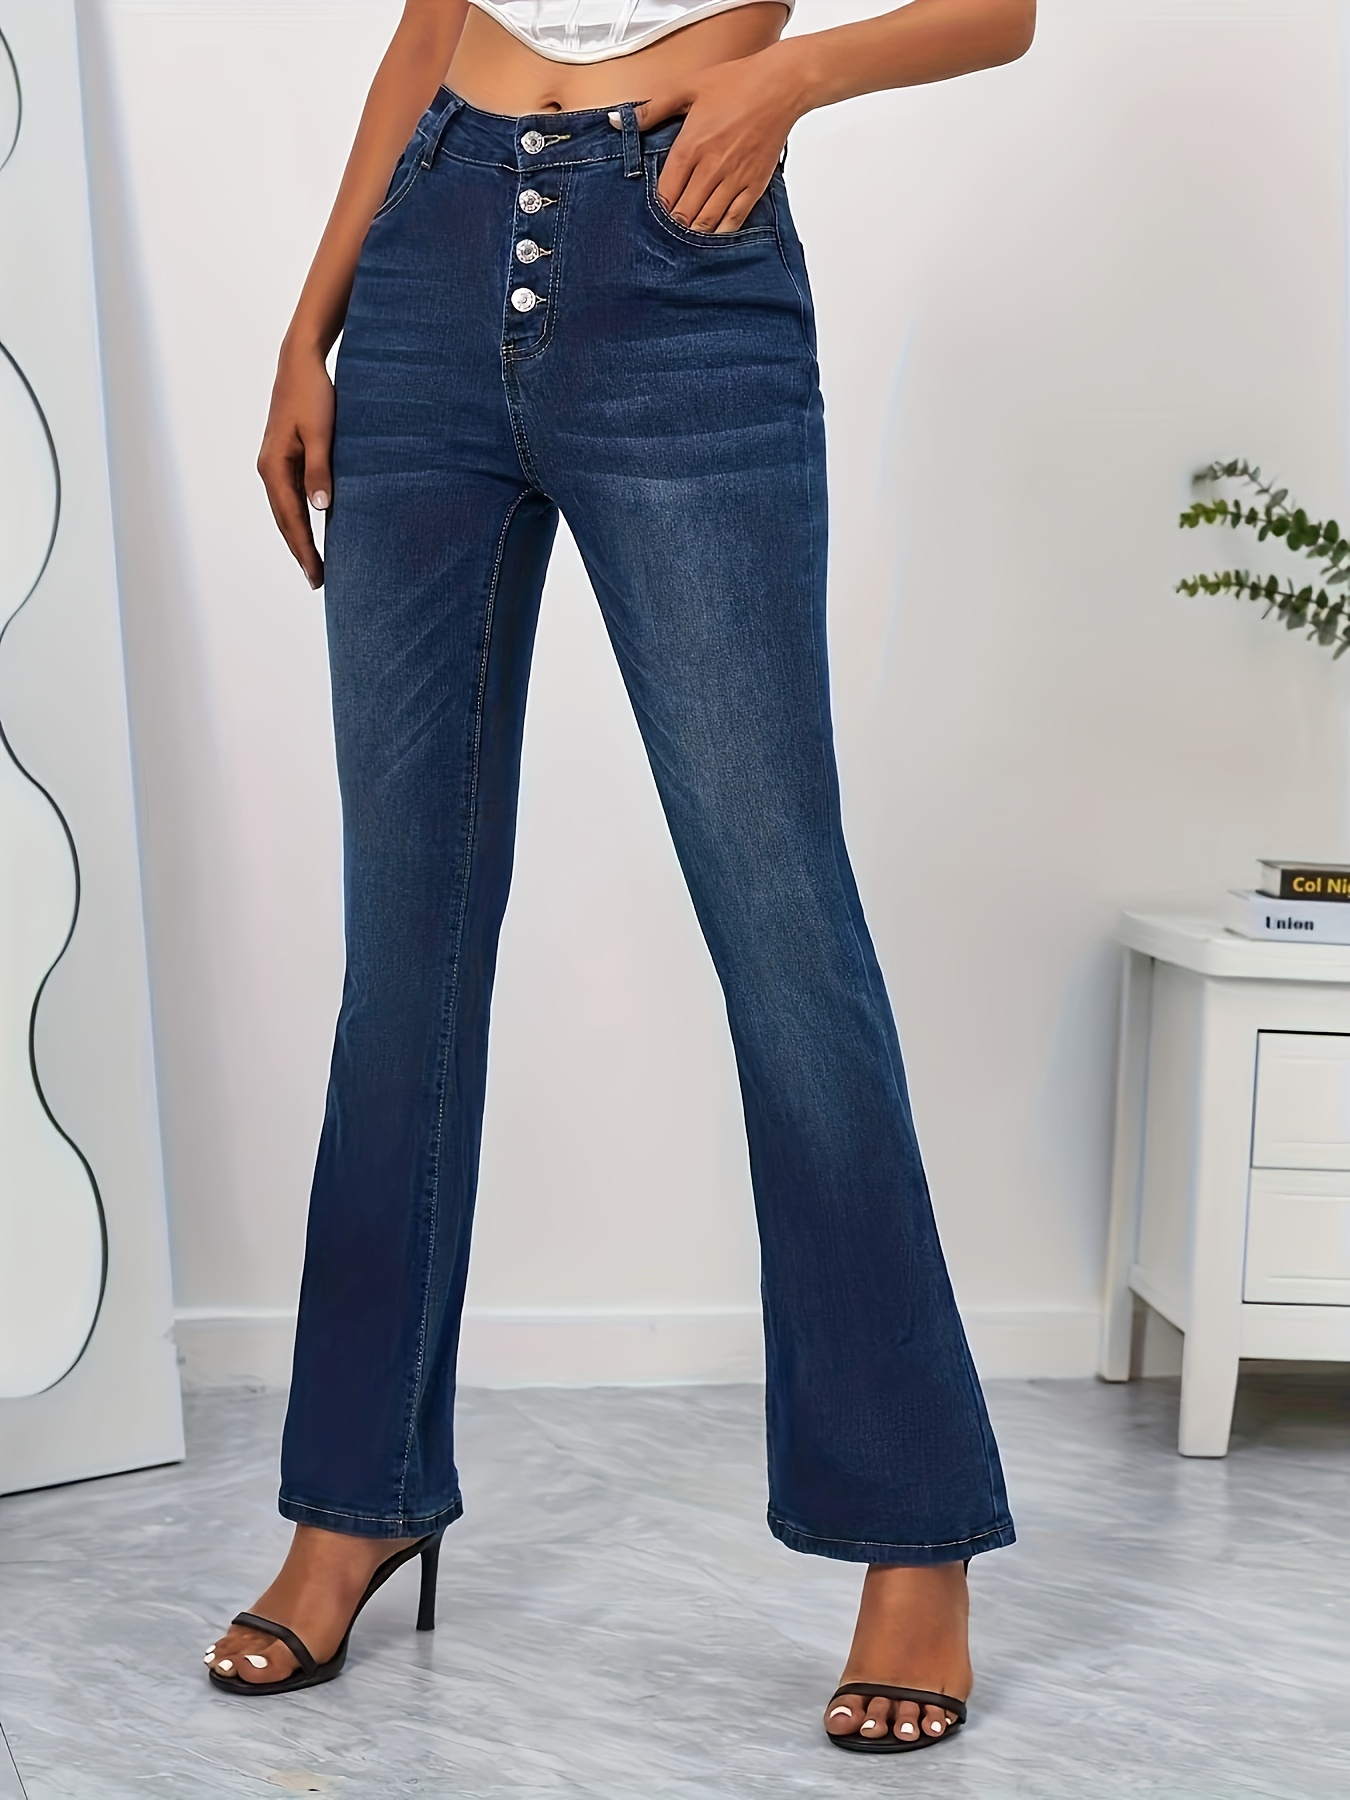 Jeans Acampanados Con Ribete Crudo * Jeans Acampanados Versátiles De  Cintura Alta Y Estiramiento Alto, Jeans Y Ropa De Mujer